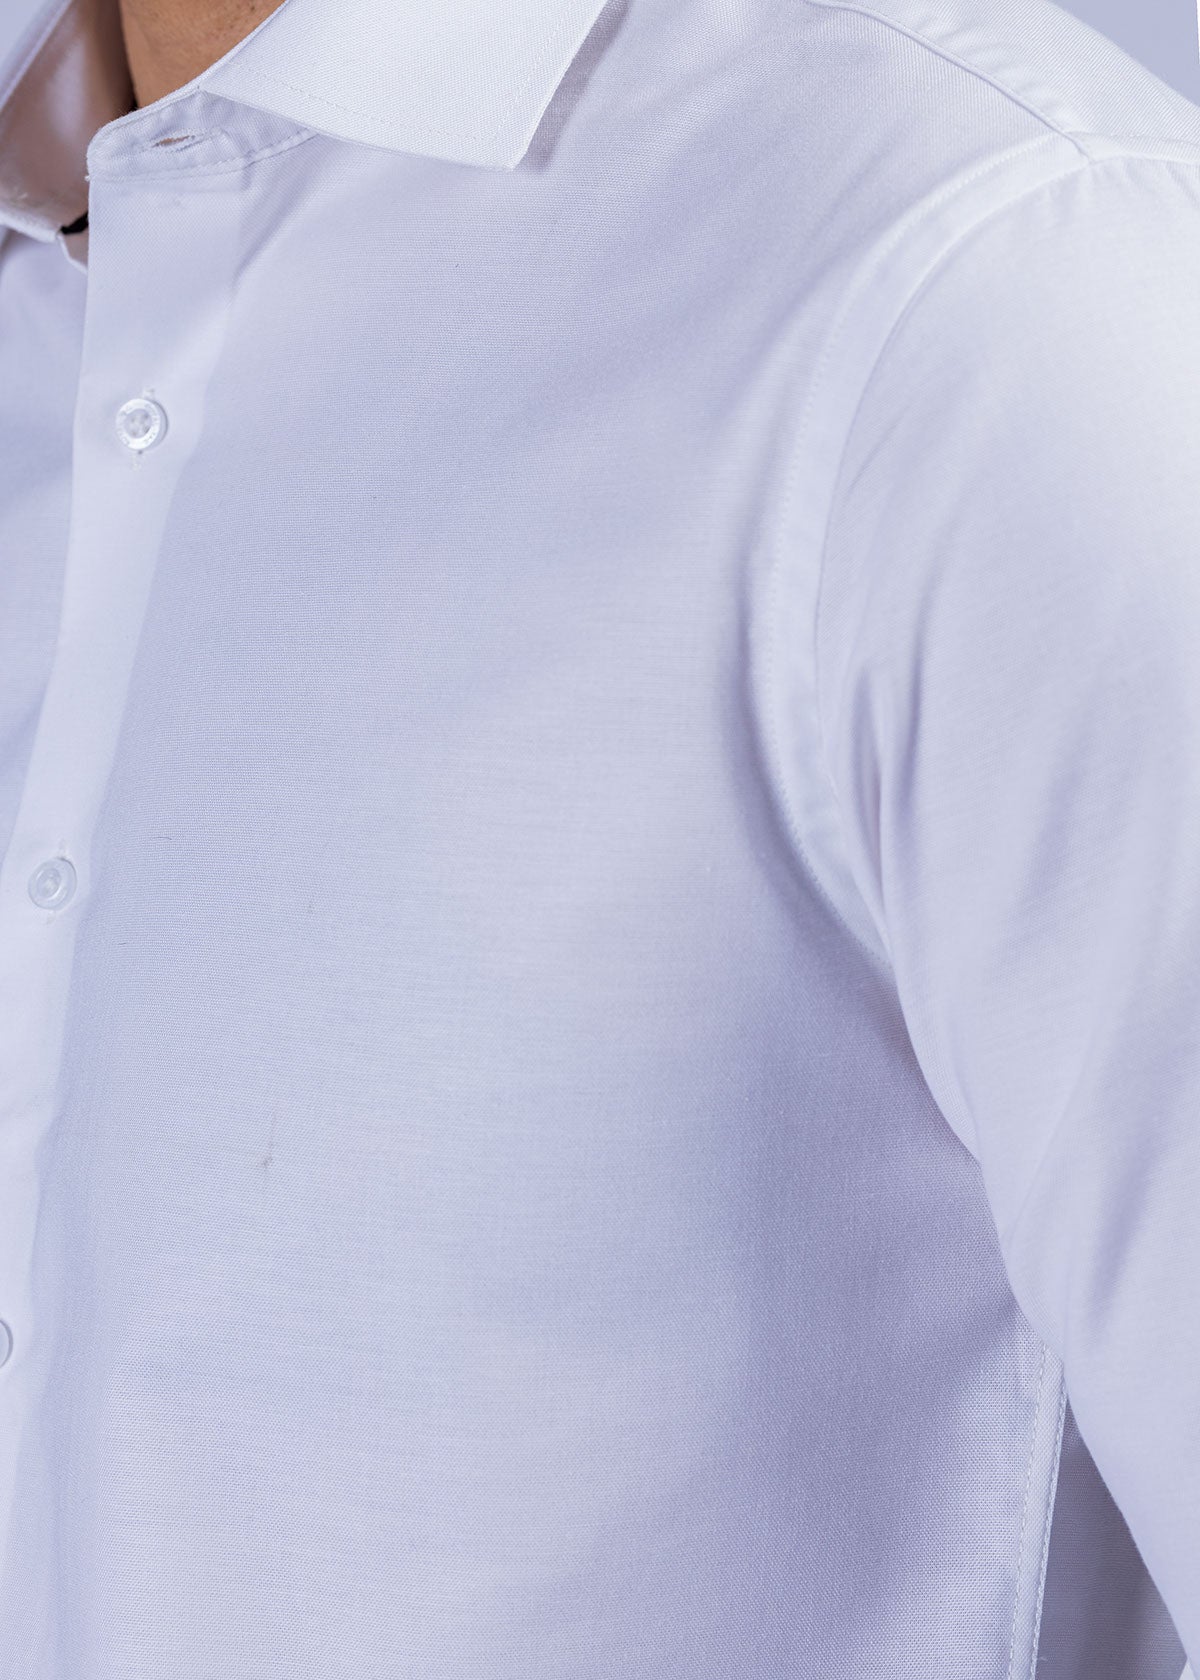 White Textured Dress Shirt CFT22014-WT